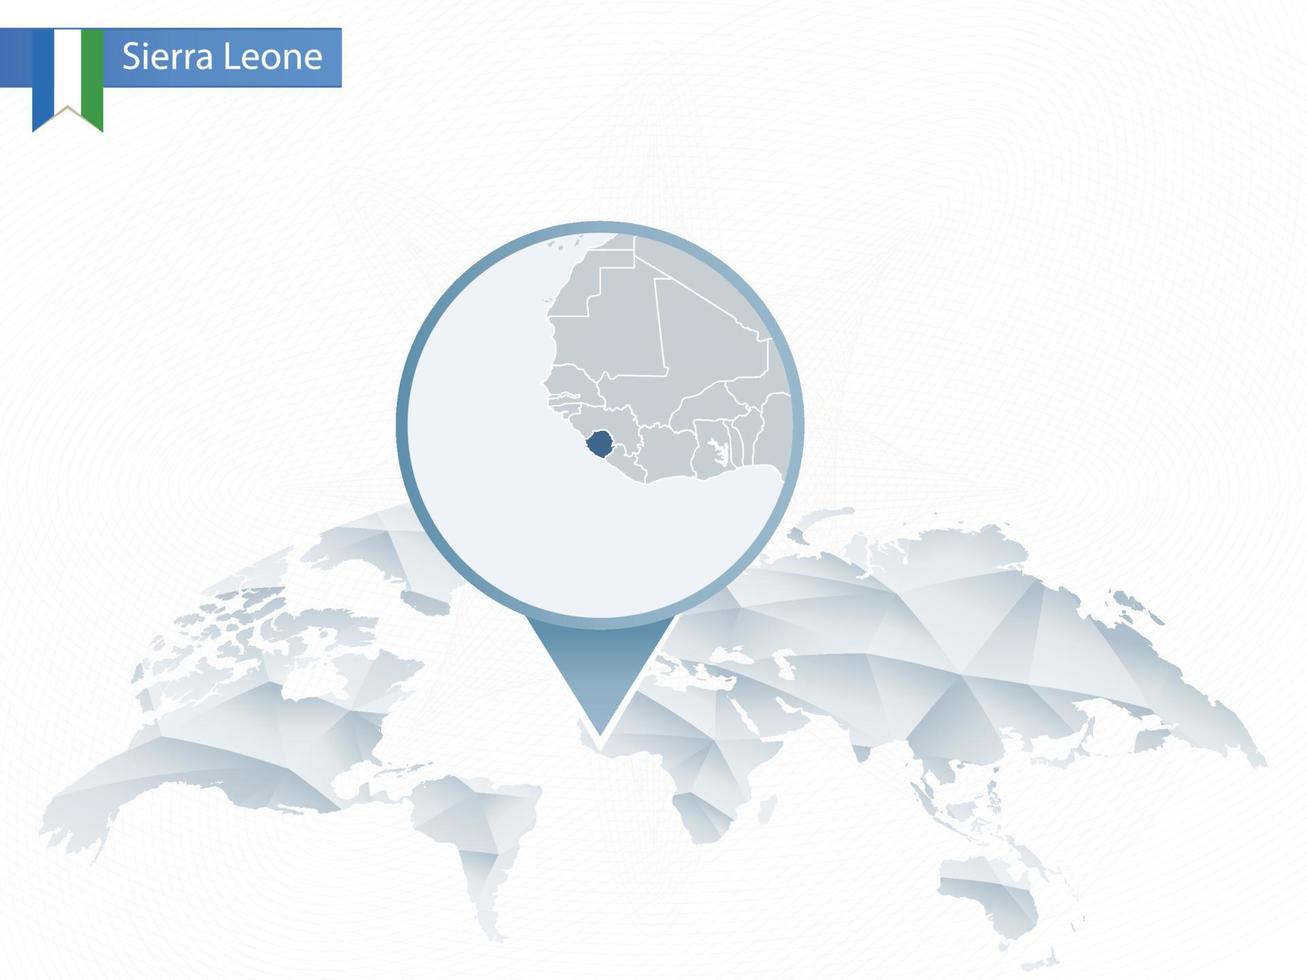 carte du monde arrondie abstraite avec carte détaillée de la sierra leone épinglée. vecteur